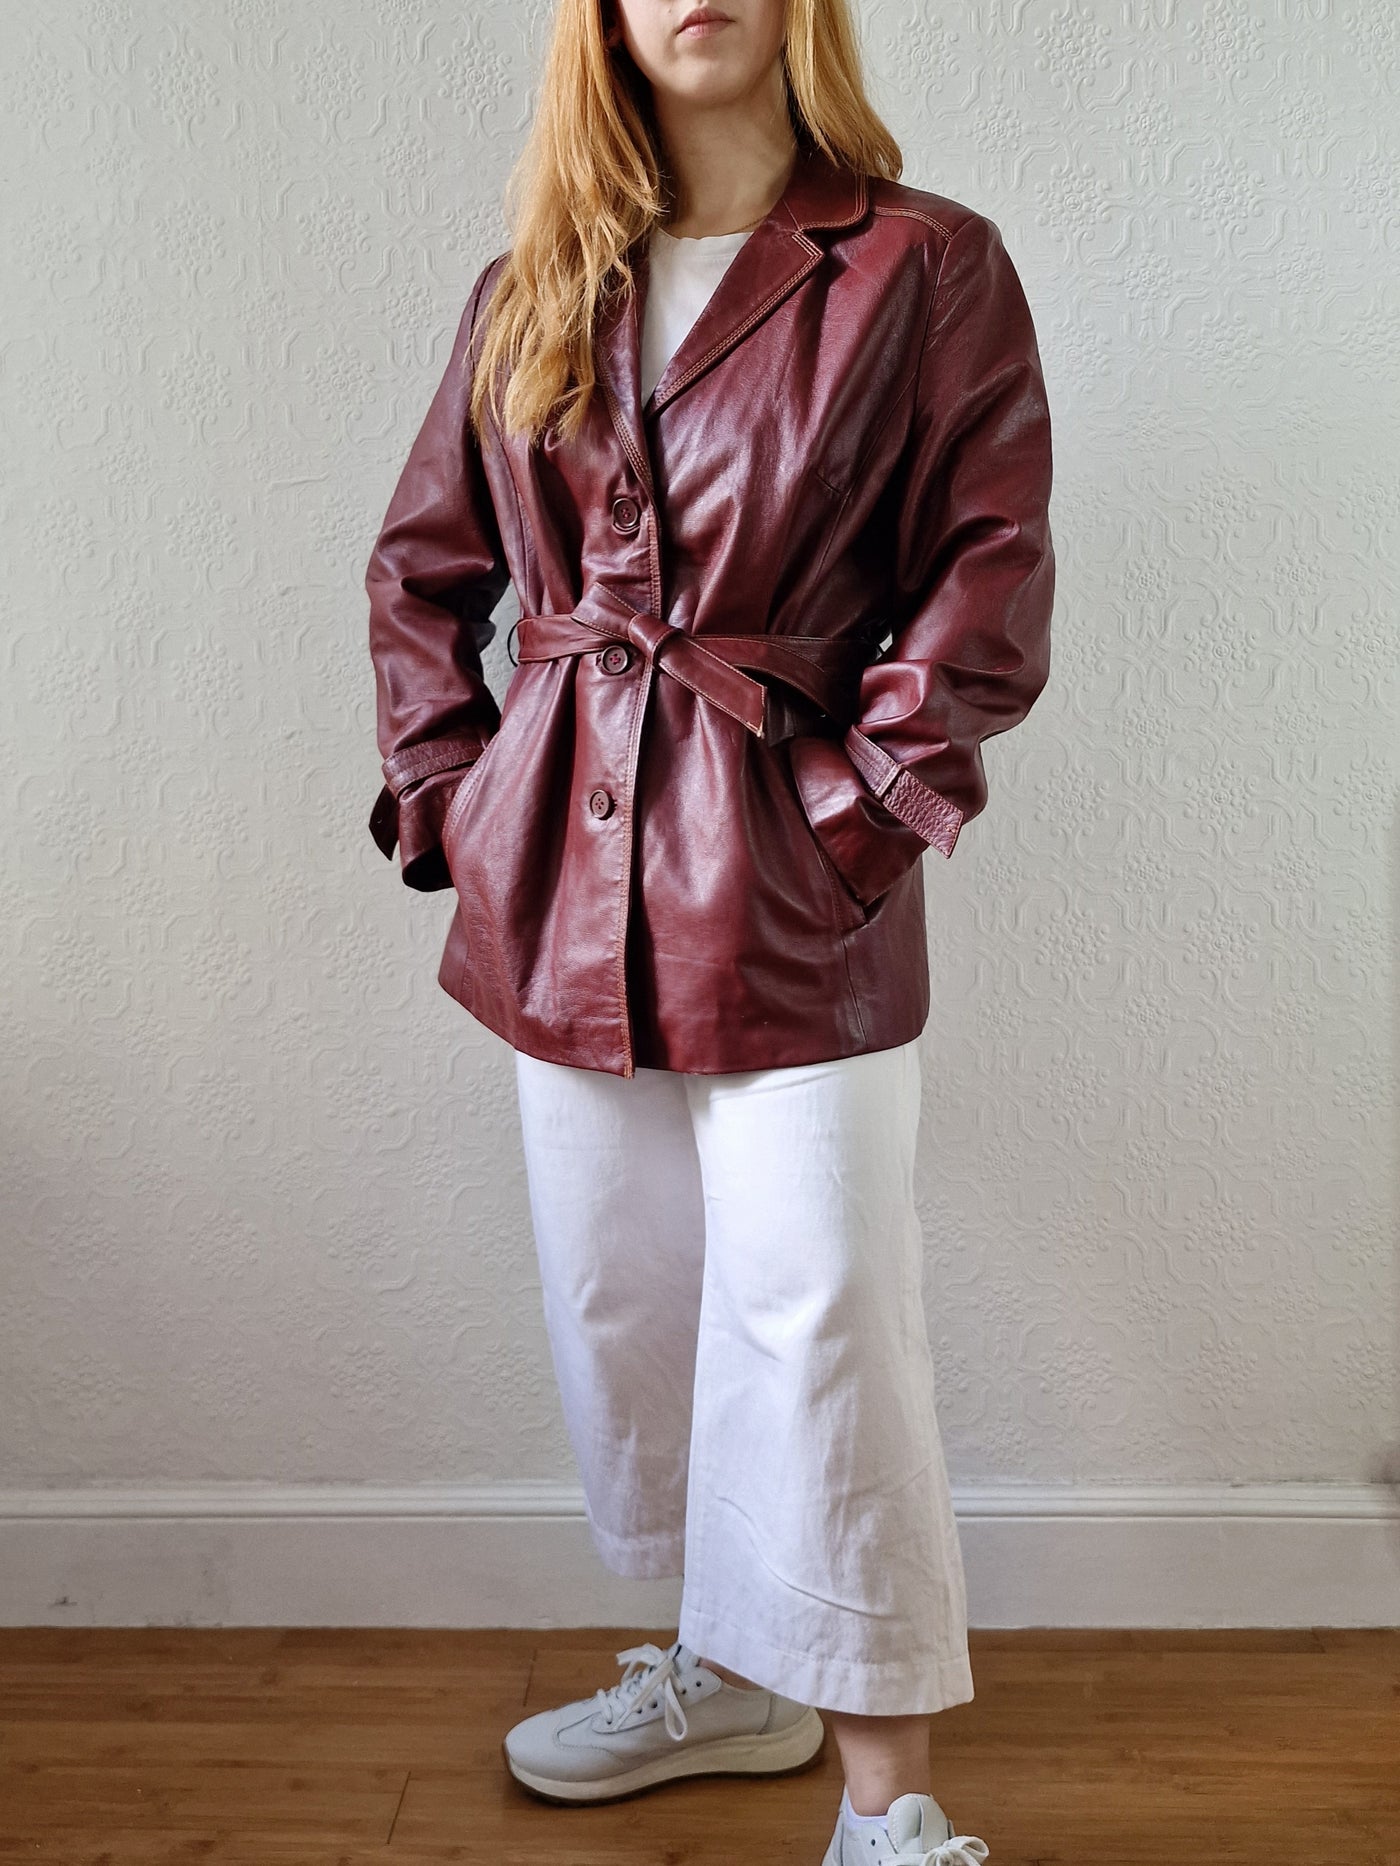 Vintage 80s Dark Cherry Red Genuine Leather Jacket with Belt - M